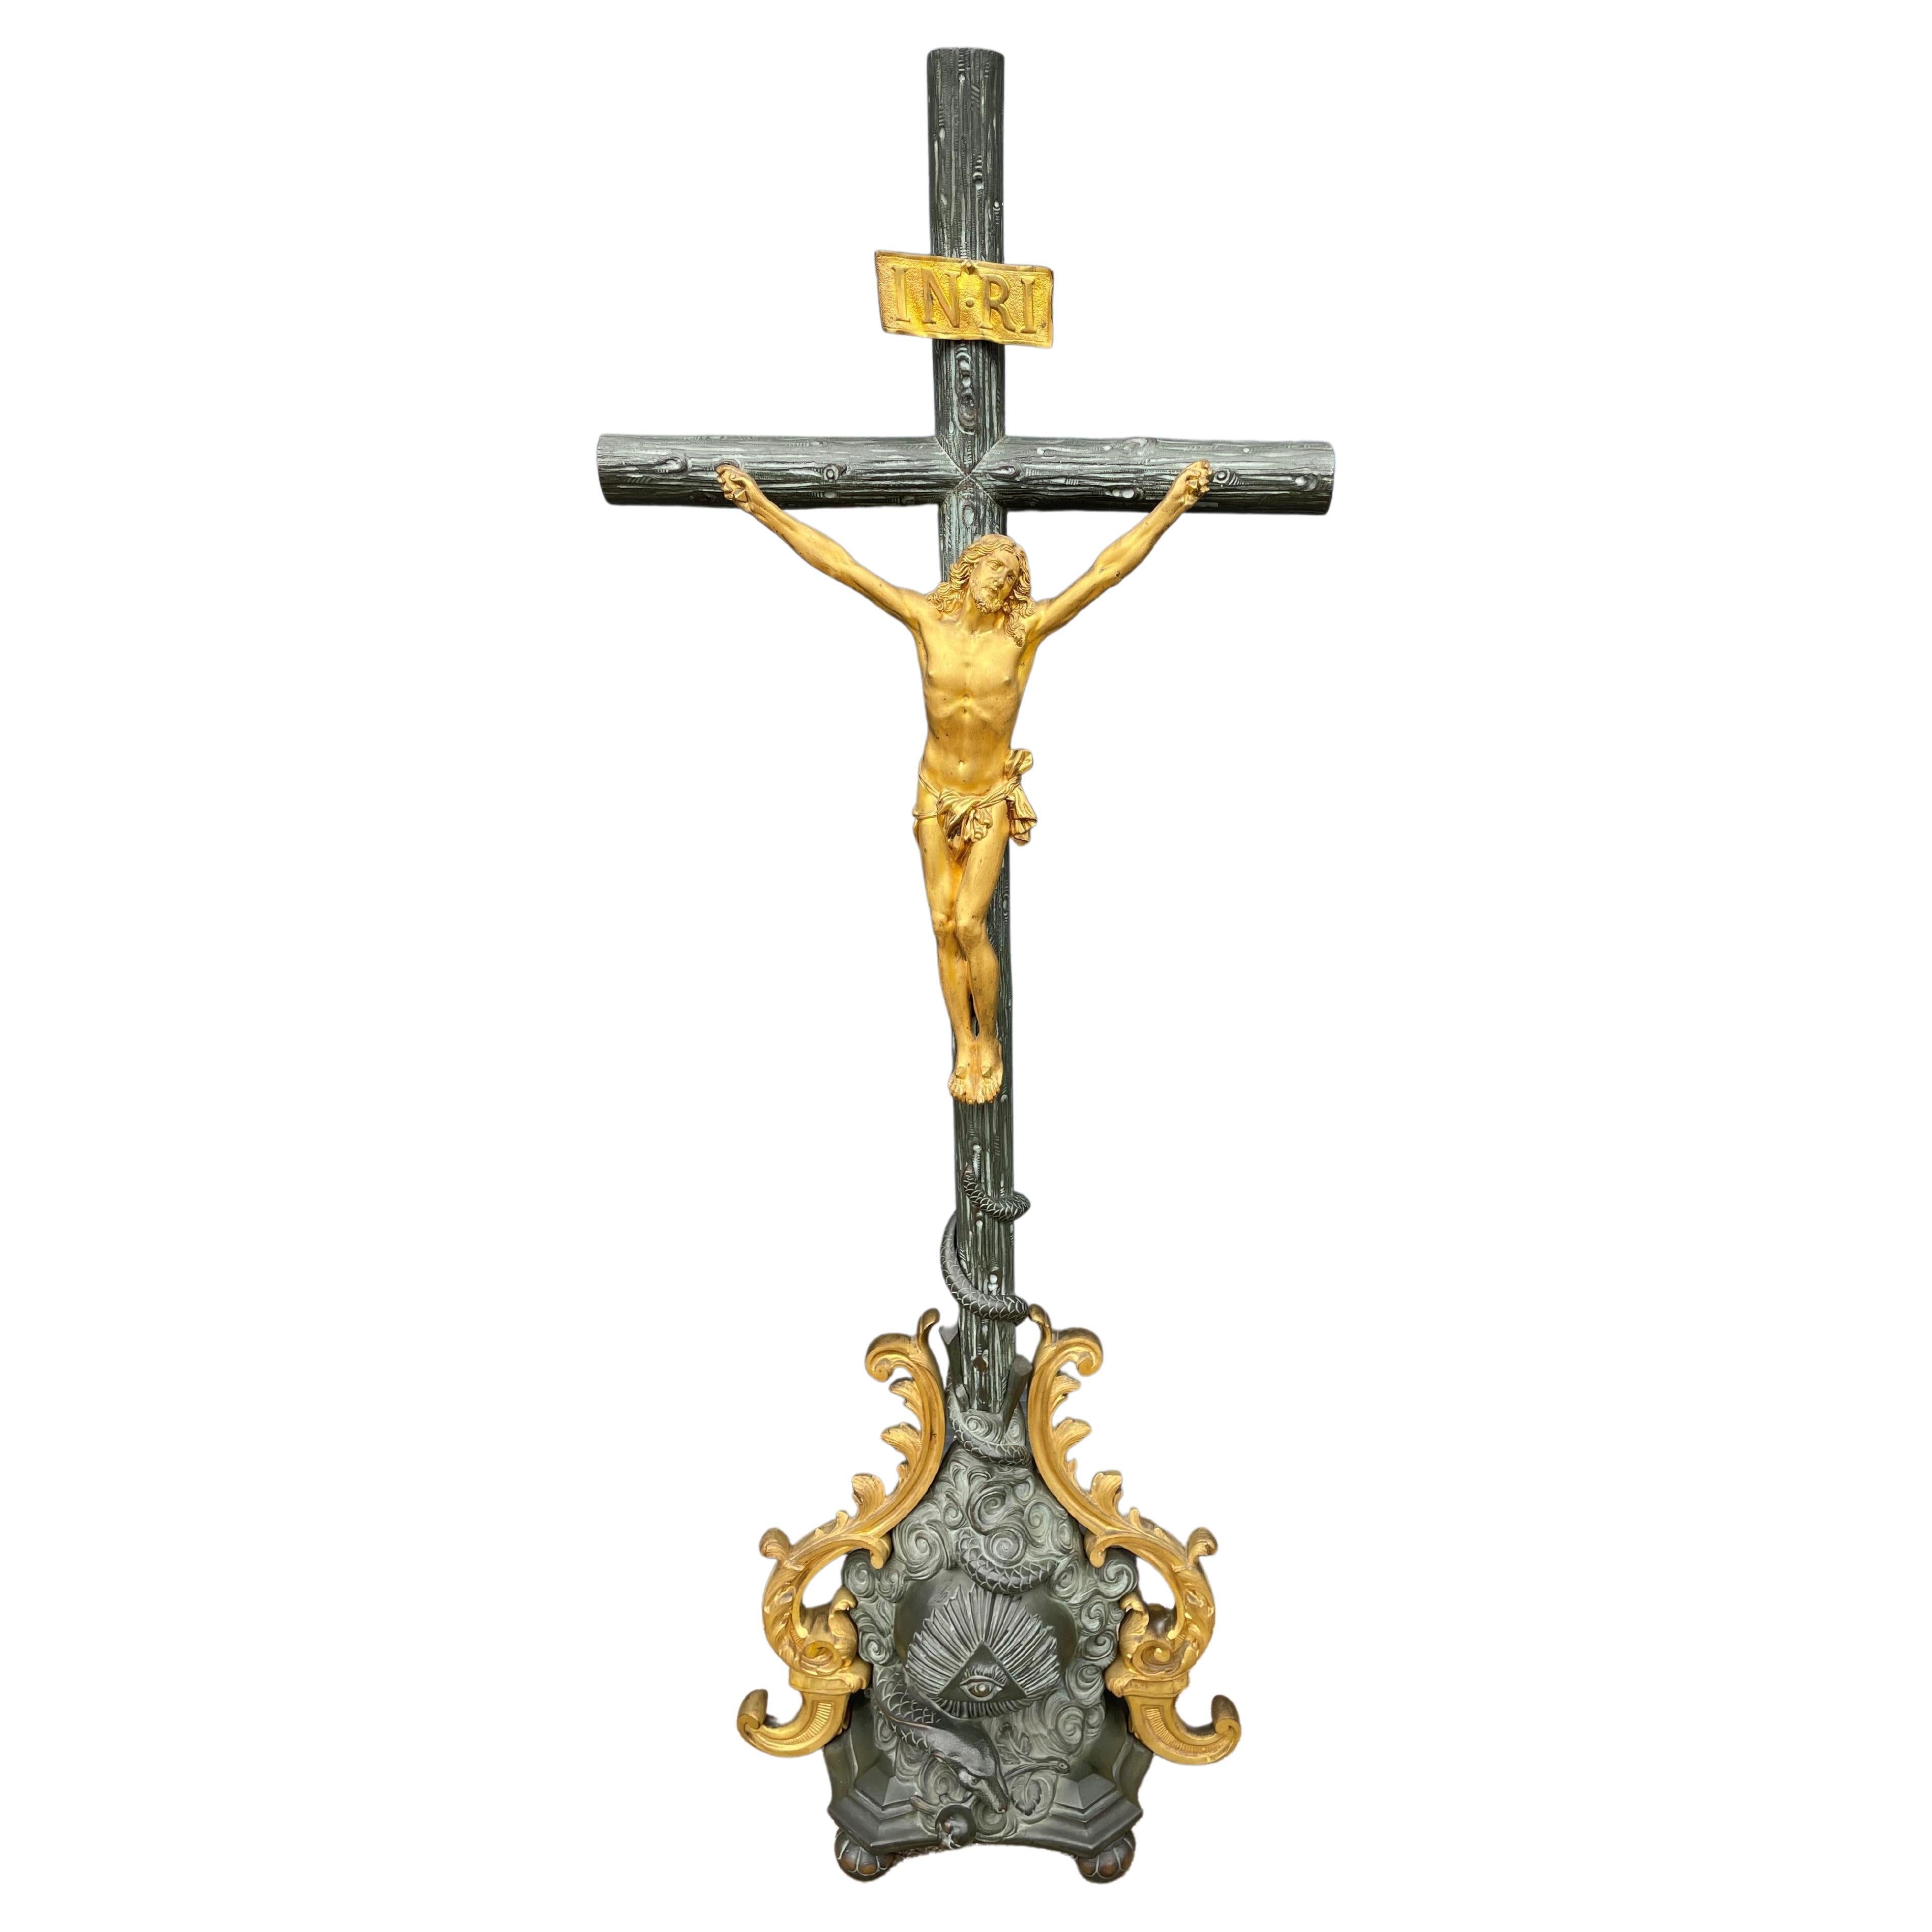 Antique Bronze Church Altar Crucifix w. Gilt Corpus of Christ & Sculptured Cross